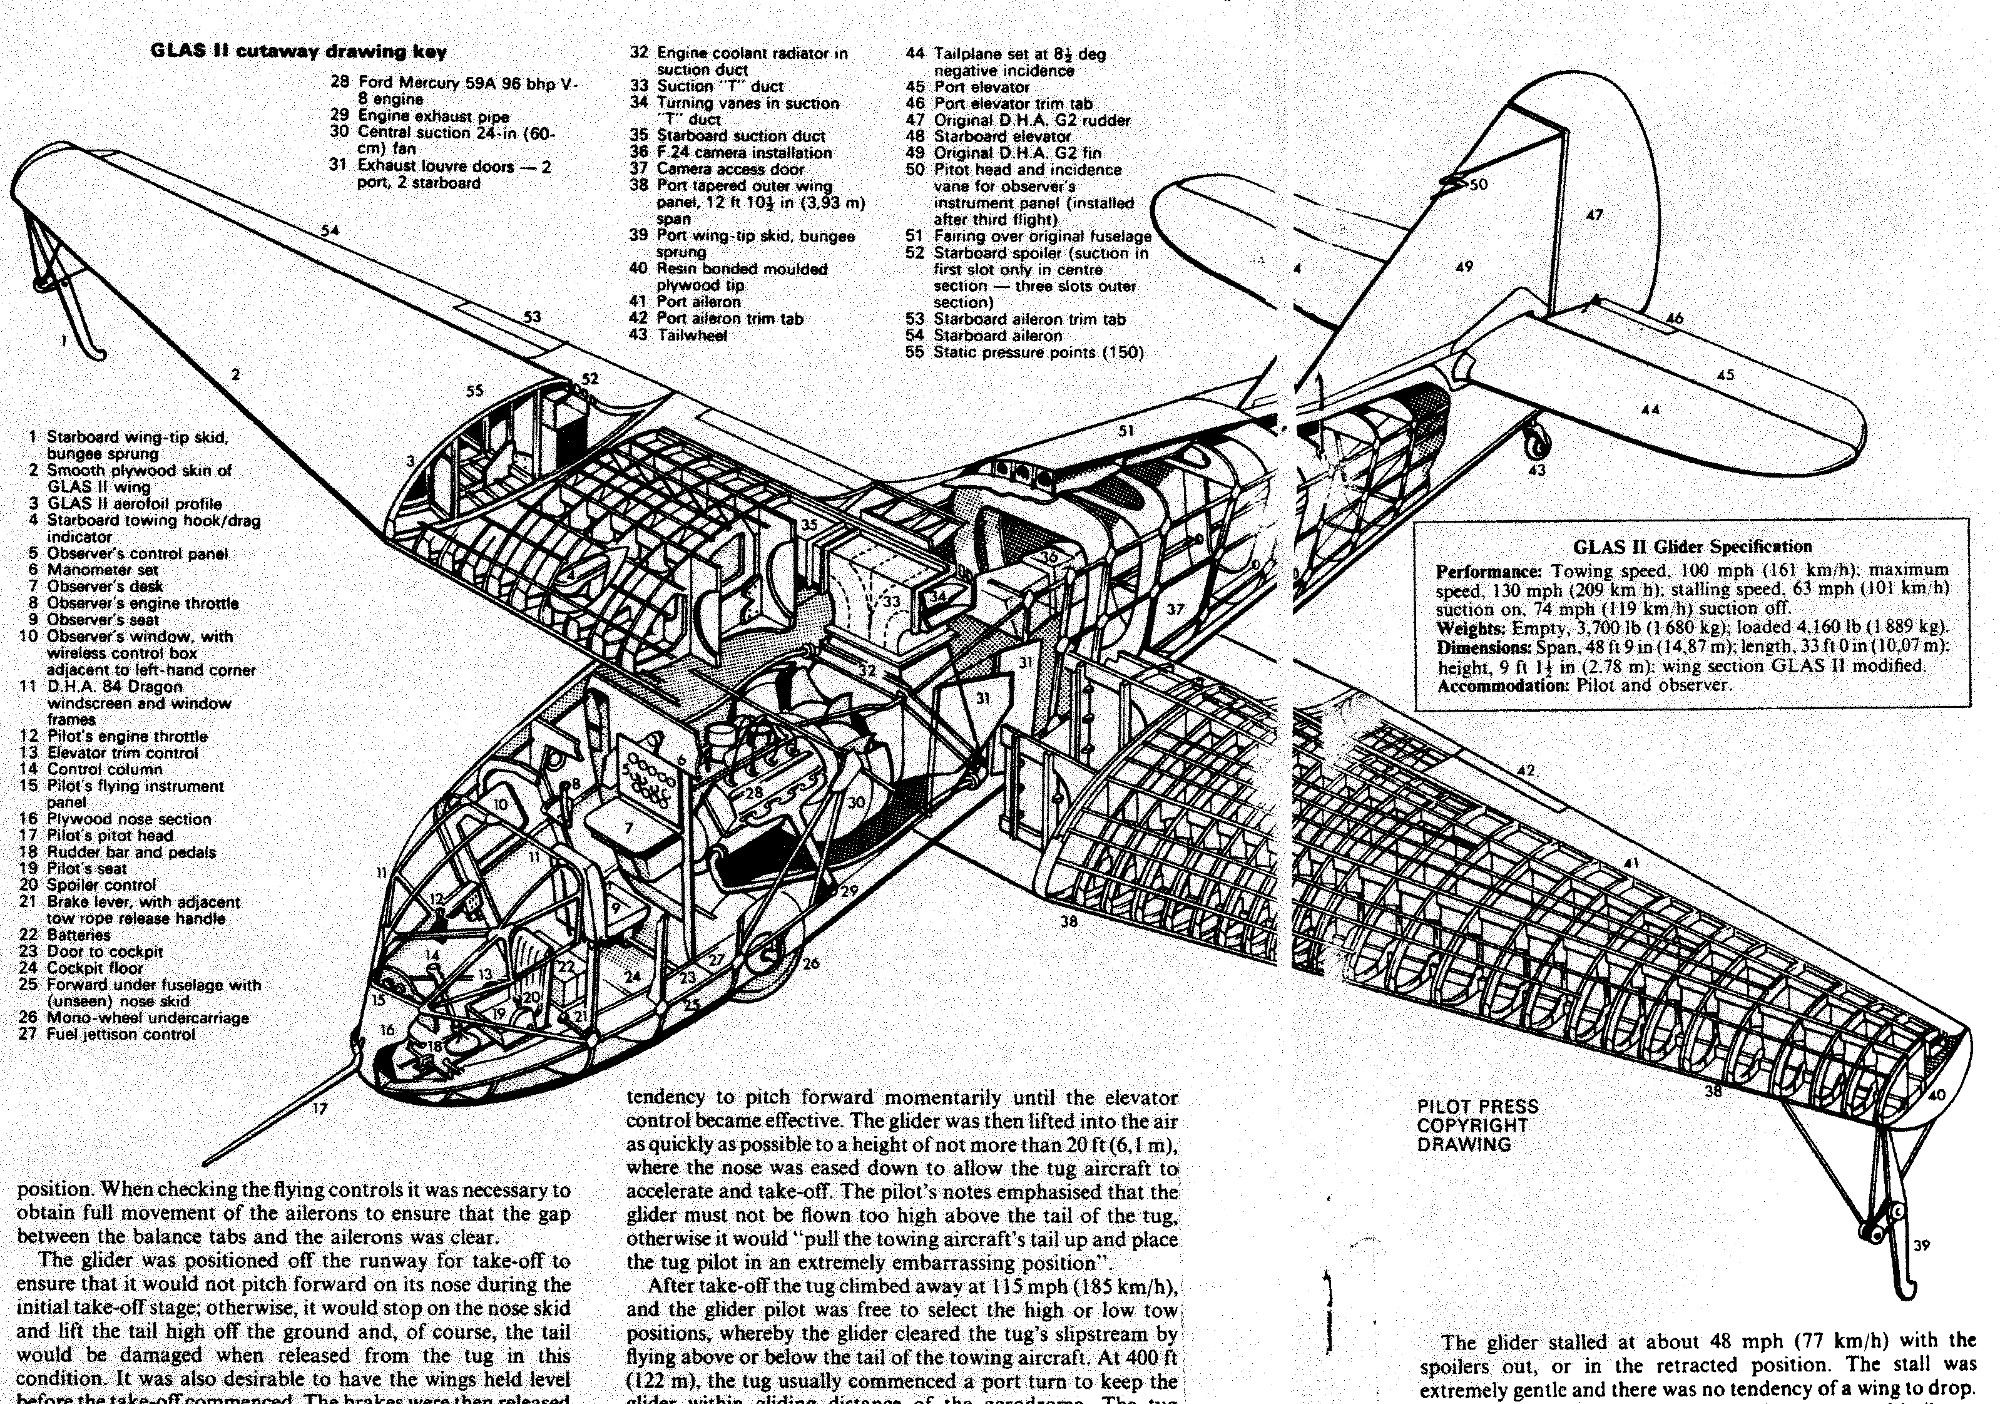 Glas_11 | Aircraft of World War II - WW2Aircraft.net Forums